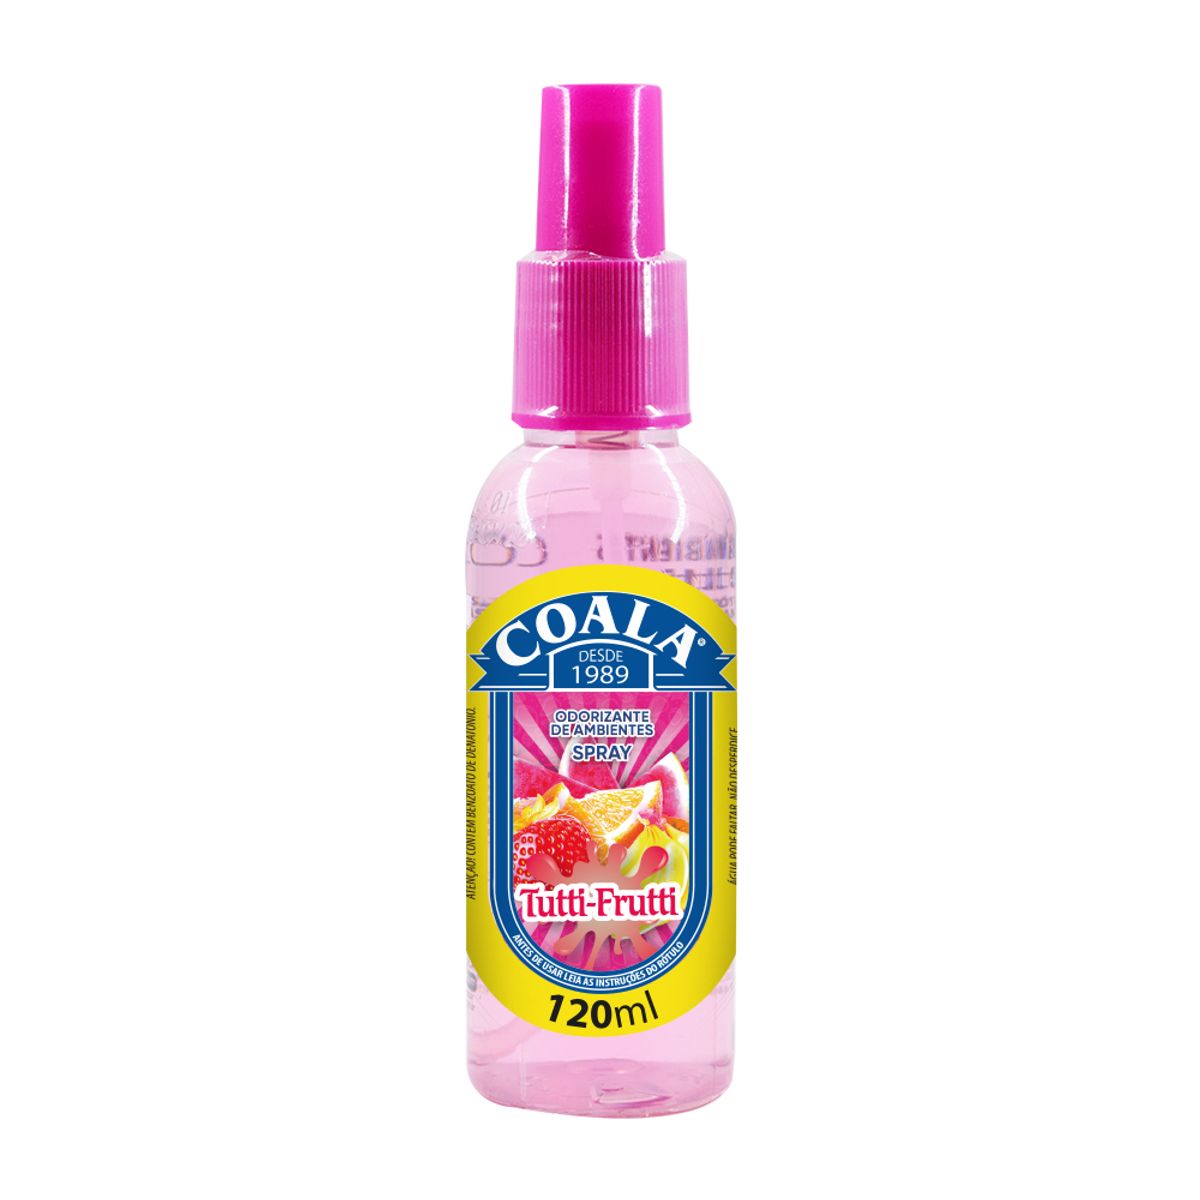 Odorizador de Ambientes Coala Spray Tutti-Frutti 120ml